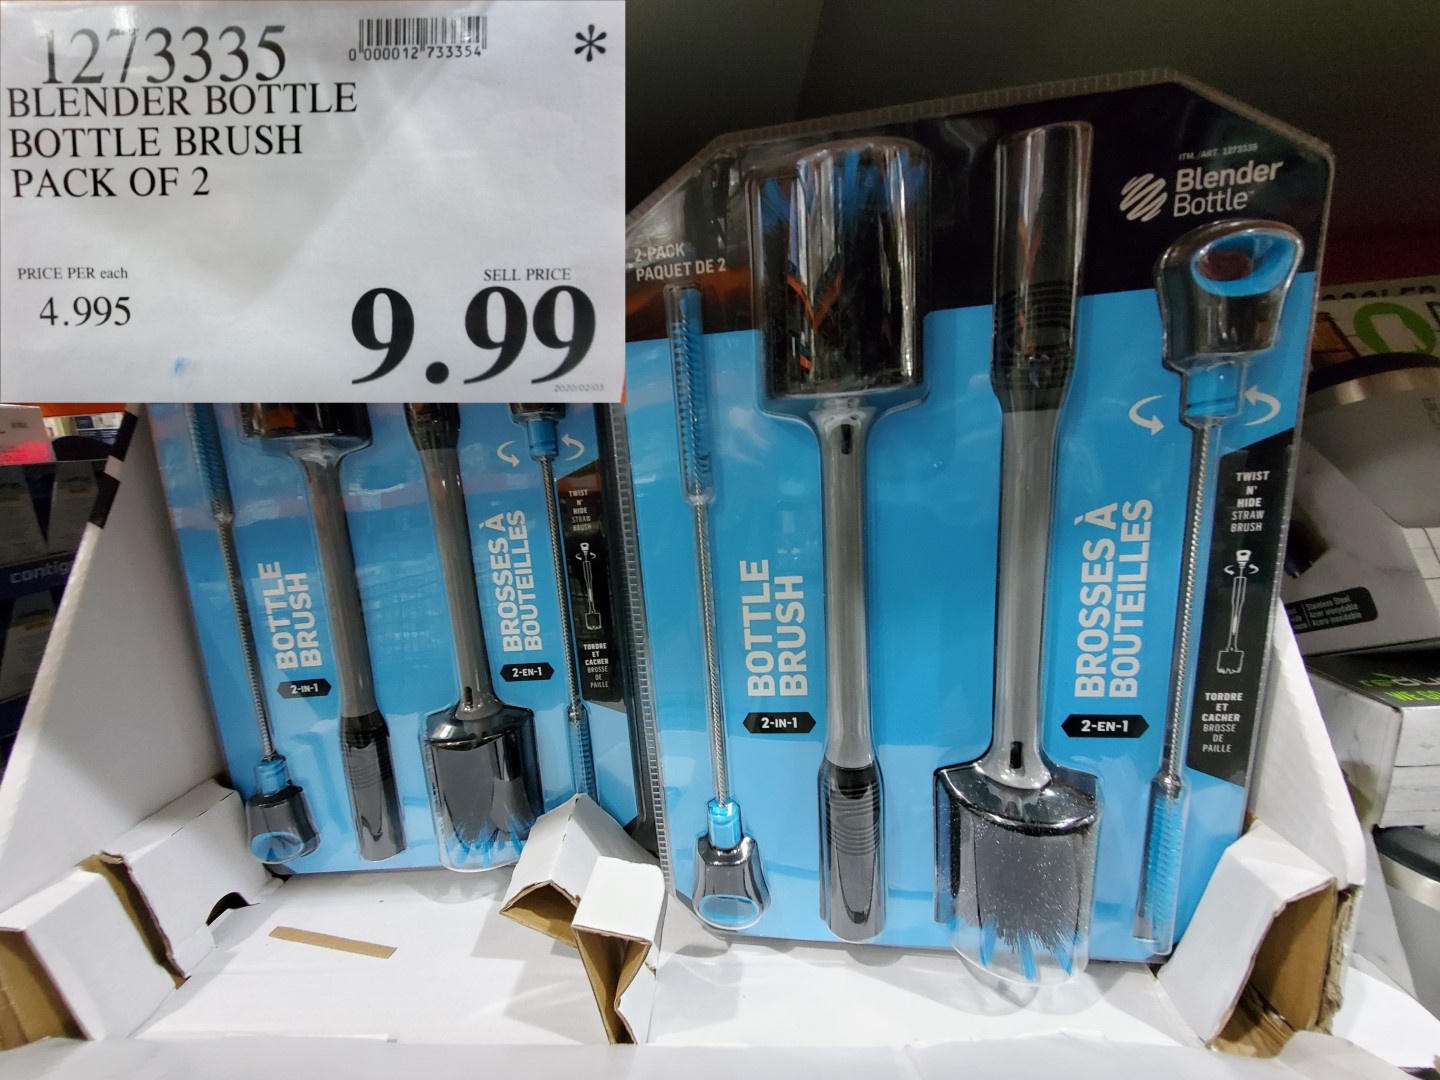 Costco Blender Bottle - Straw & Bottle 2-in-1 Brush Set - 2 Pack - $6.99  (normally $9.99) 